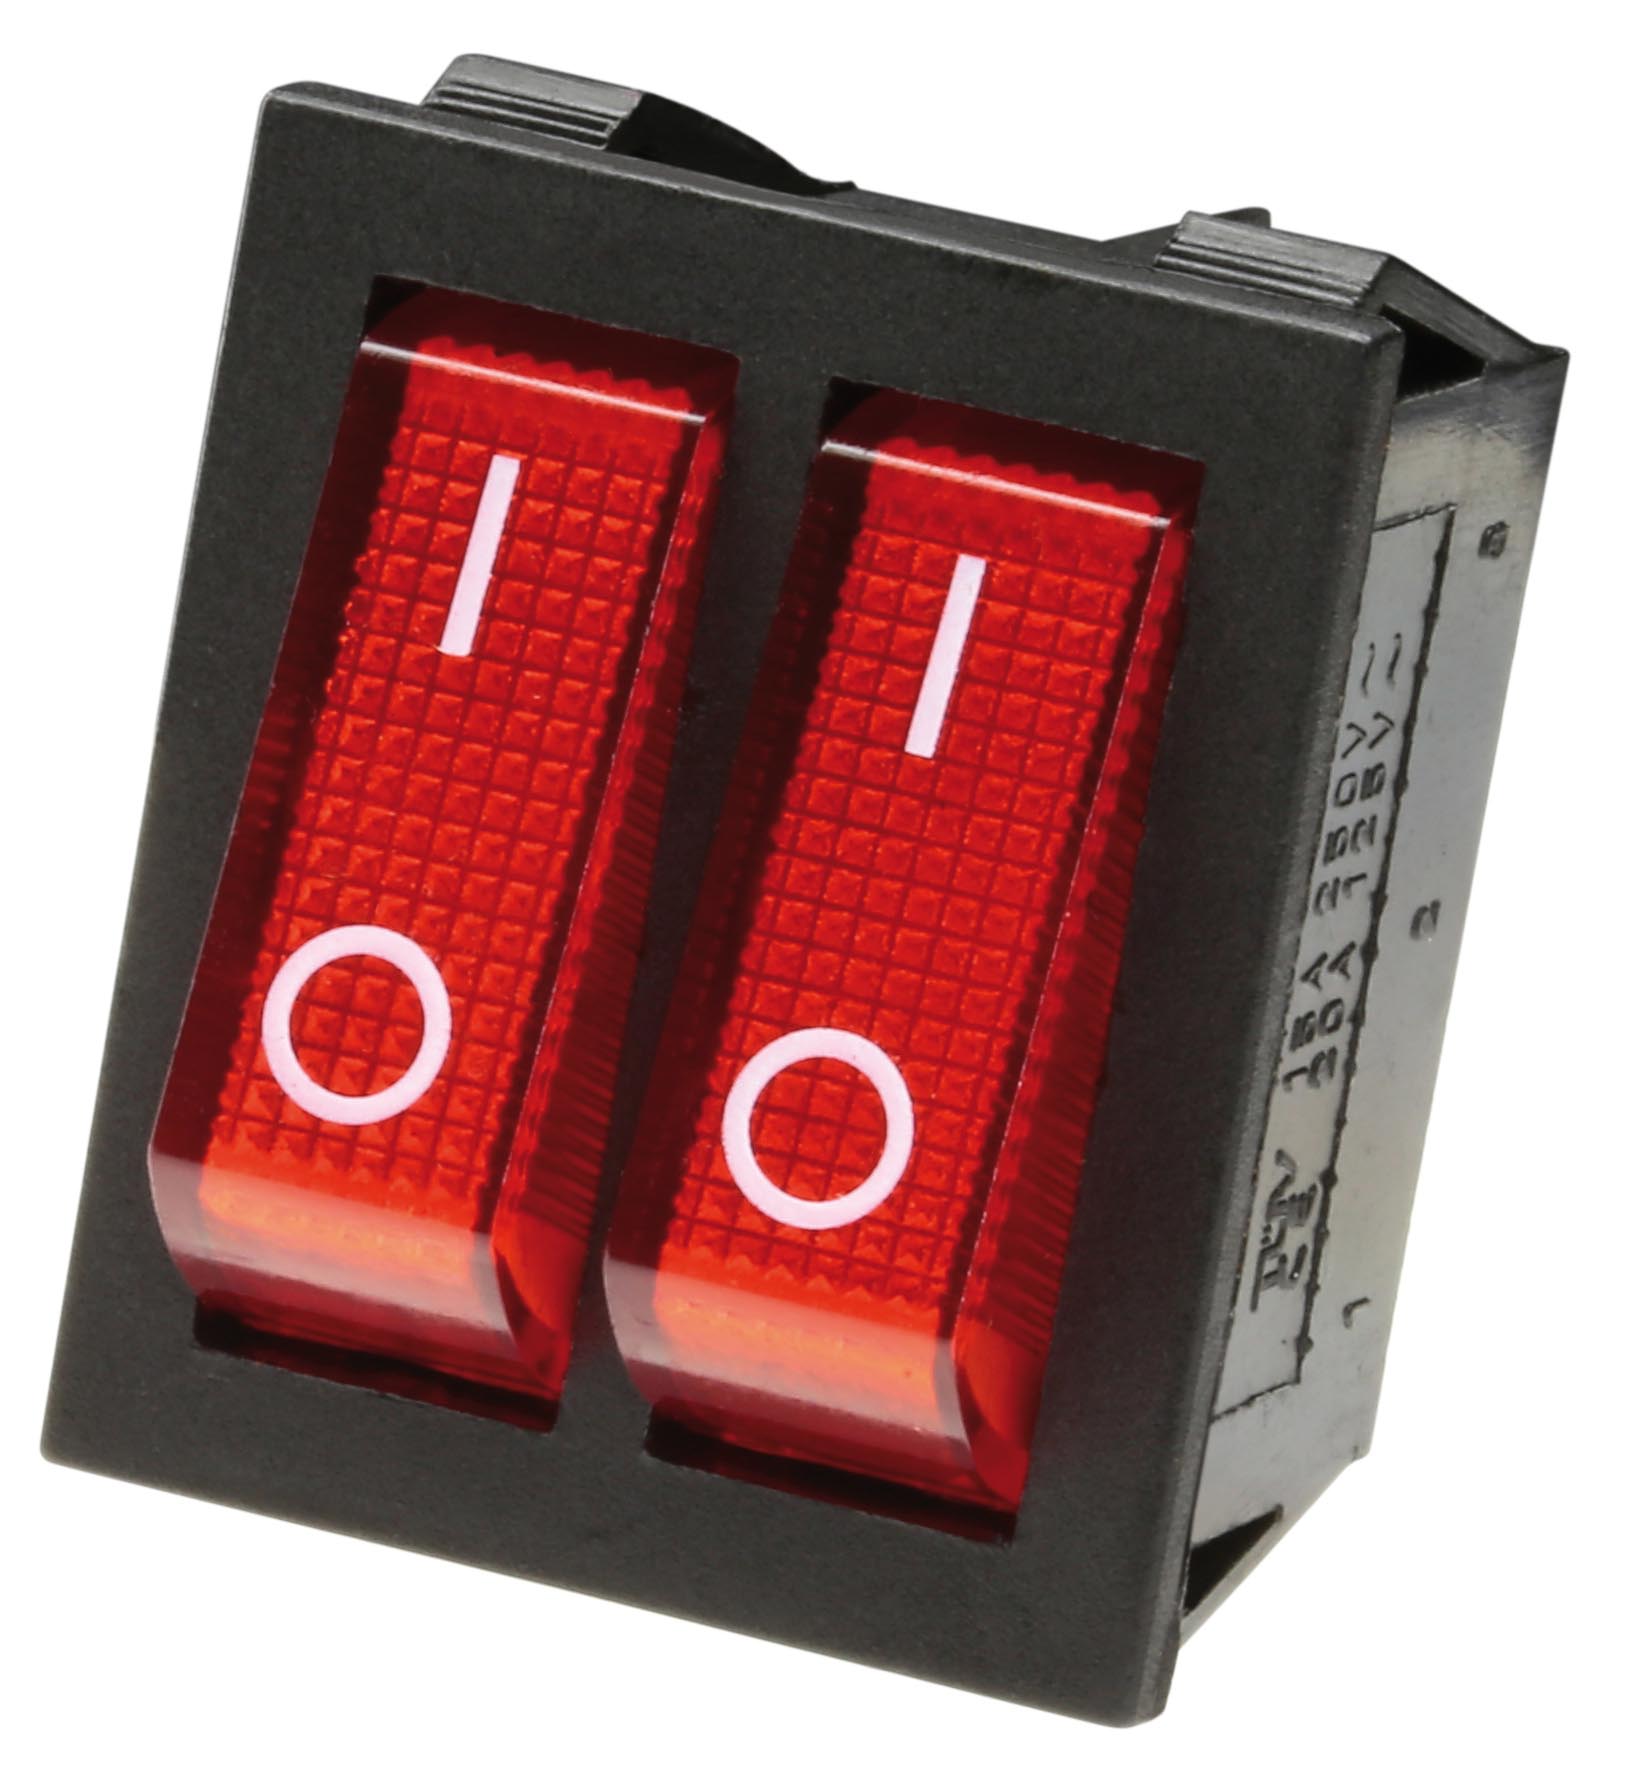 Die roten Wippen des Schalters haben einen weißen O-I (An/Aus) Aufdruck.